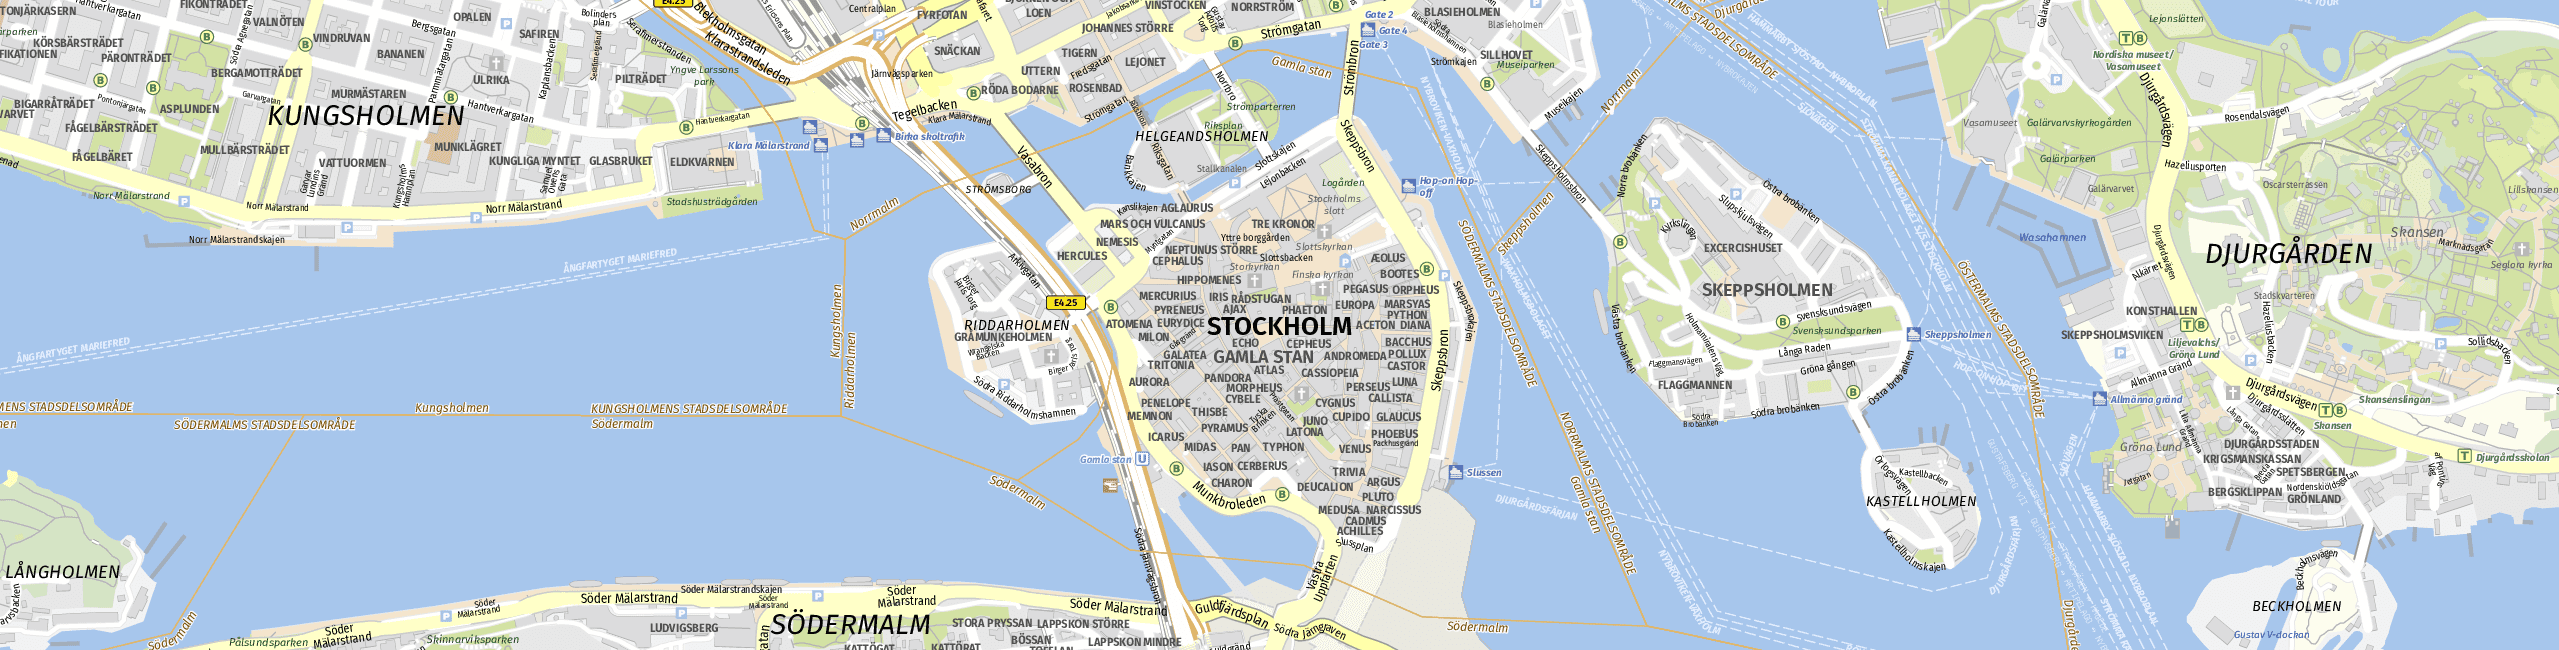 Stadtplan Stockholm zum Downloaden.